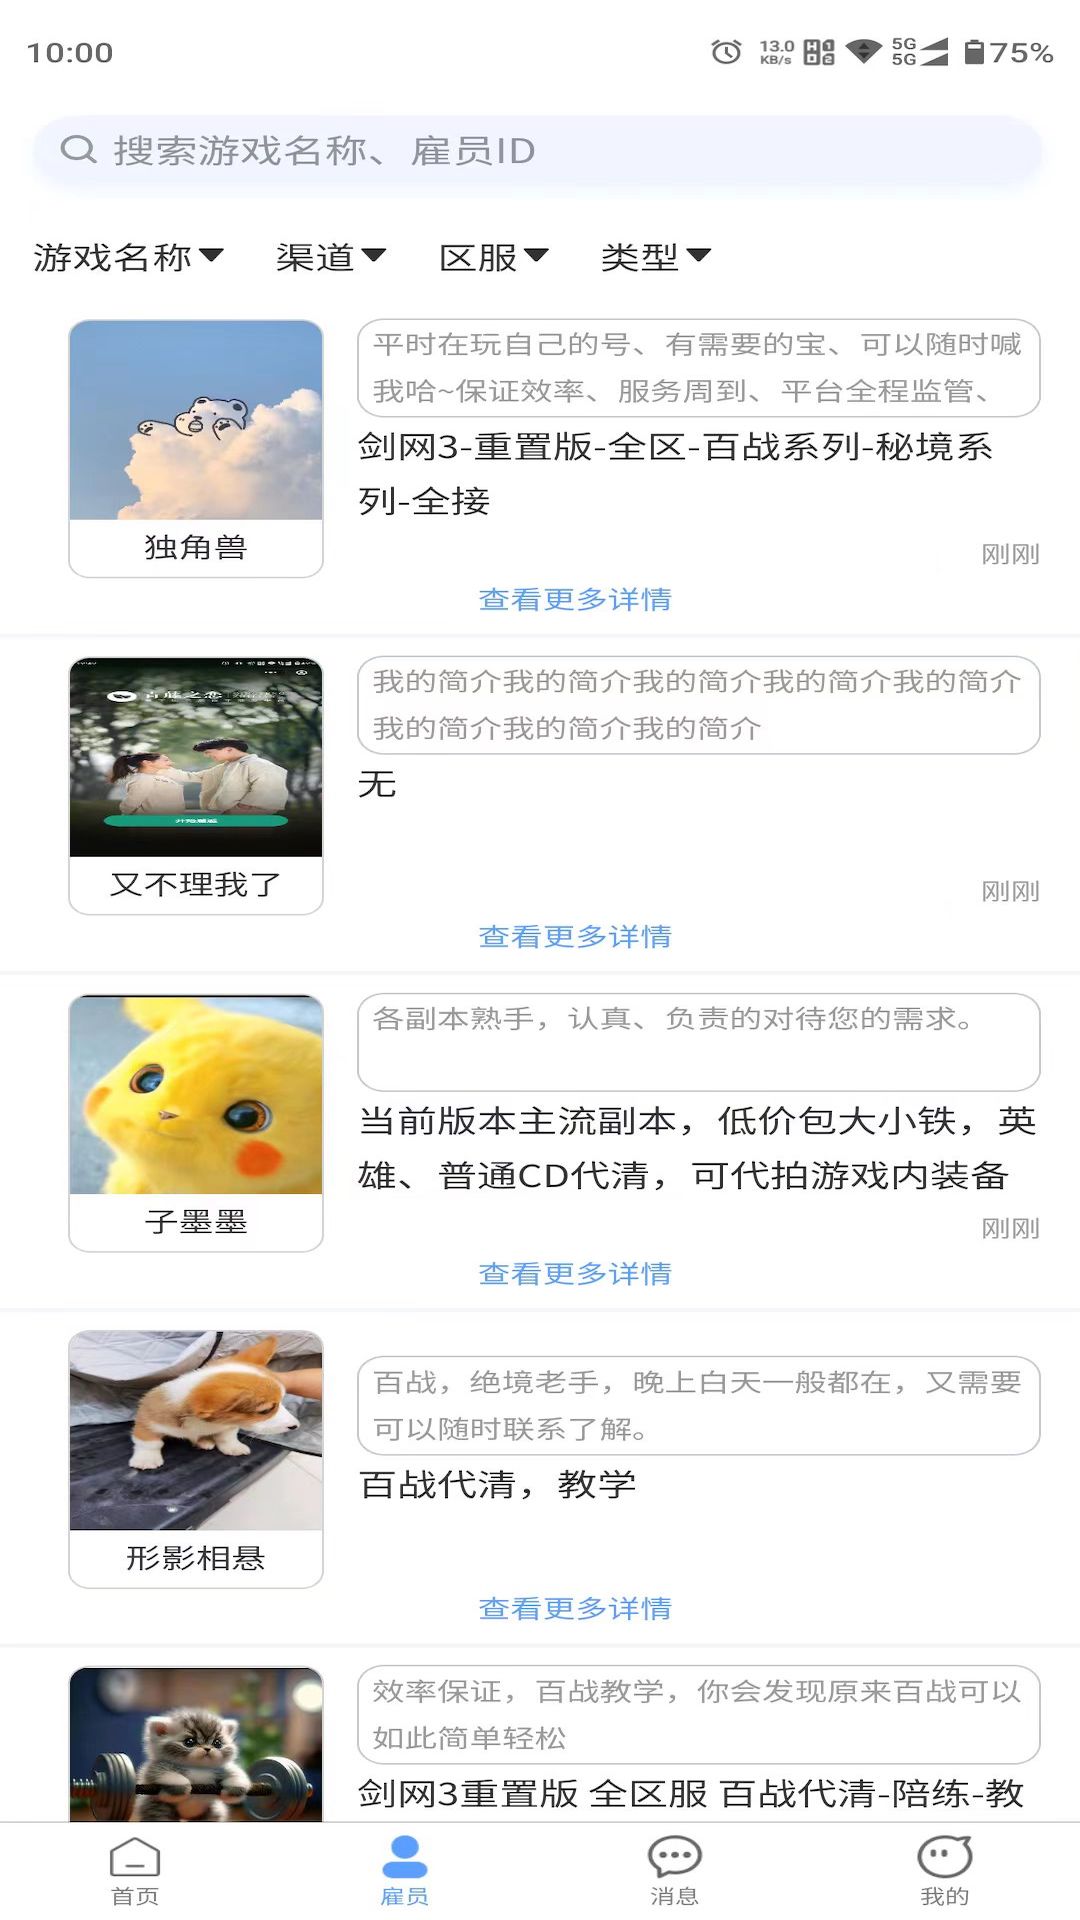 娱游游app下载,娱游游app官方版 v1.2.1